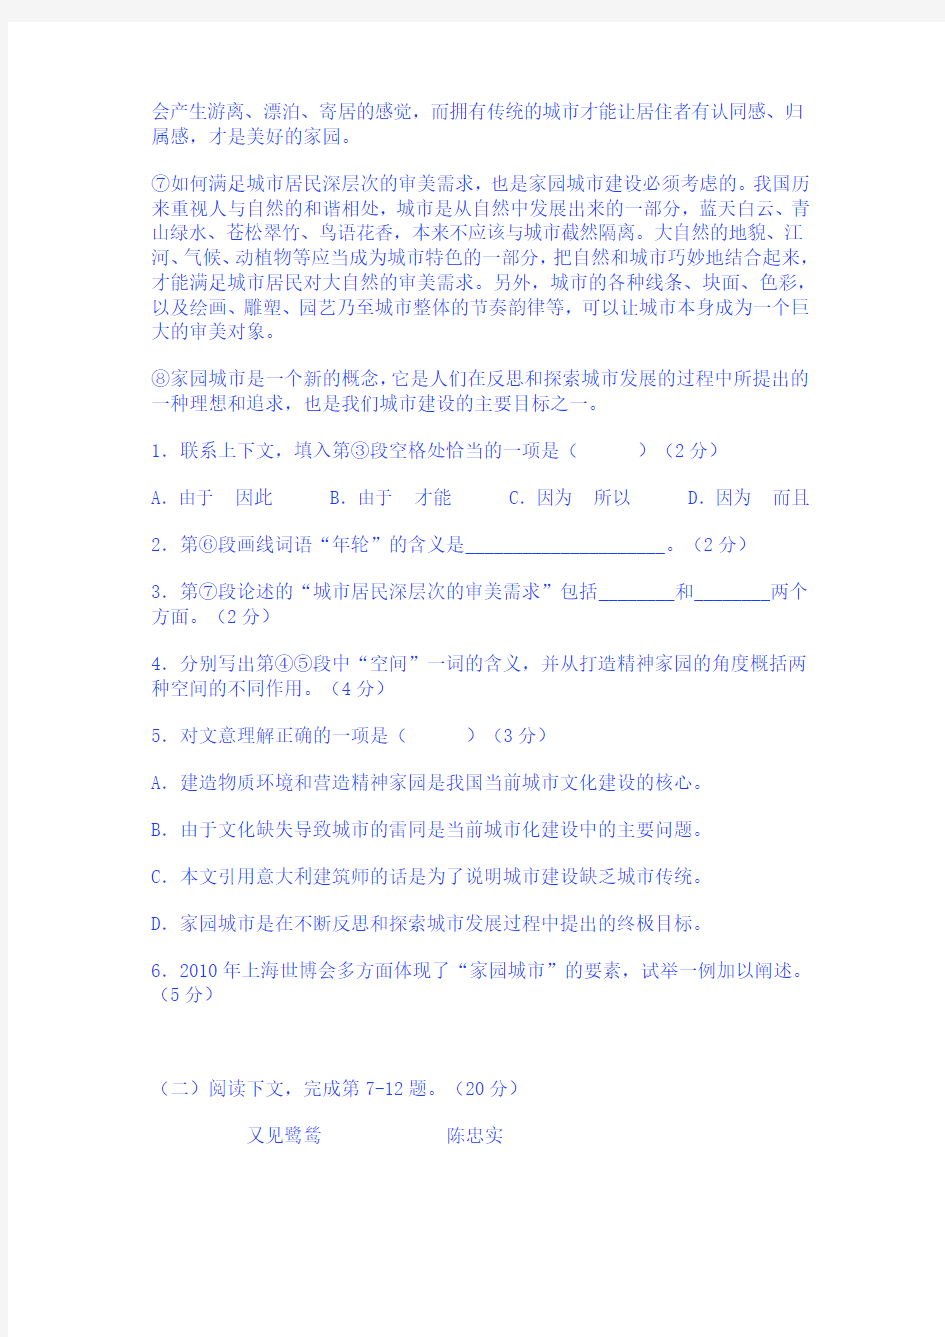 2011年高考上海语文卷及试题详细解析